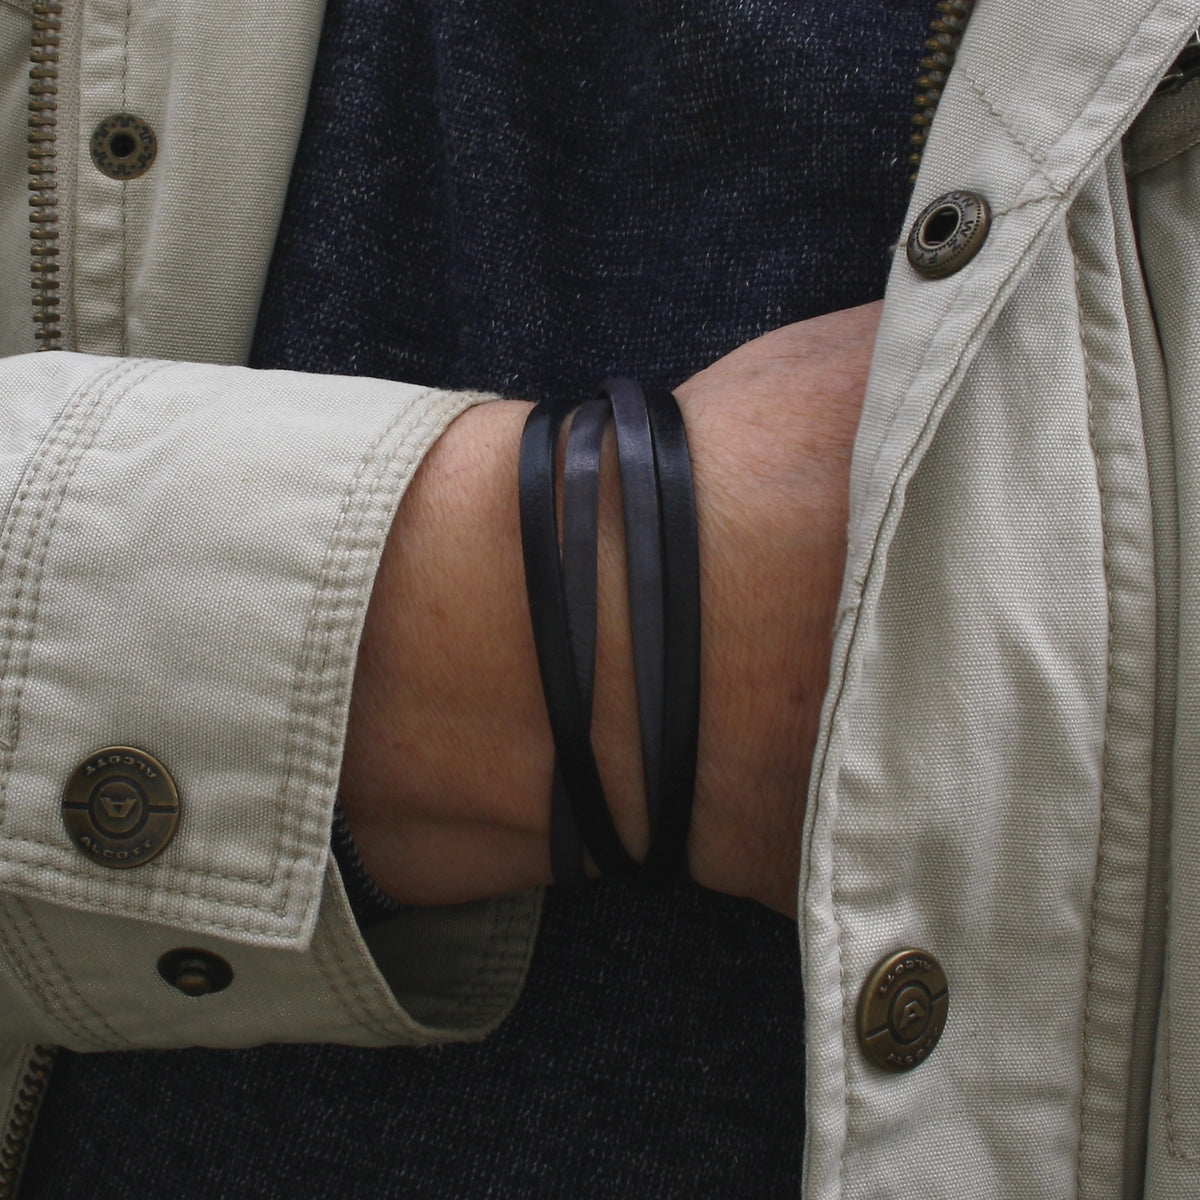 Herren-Leder-Armband-Twist-schwarz-grau-flach-Edelstahlverschluss-getragen-wavepirate-shop-1